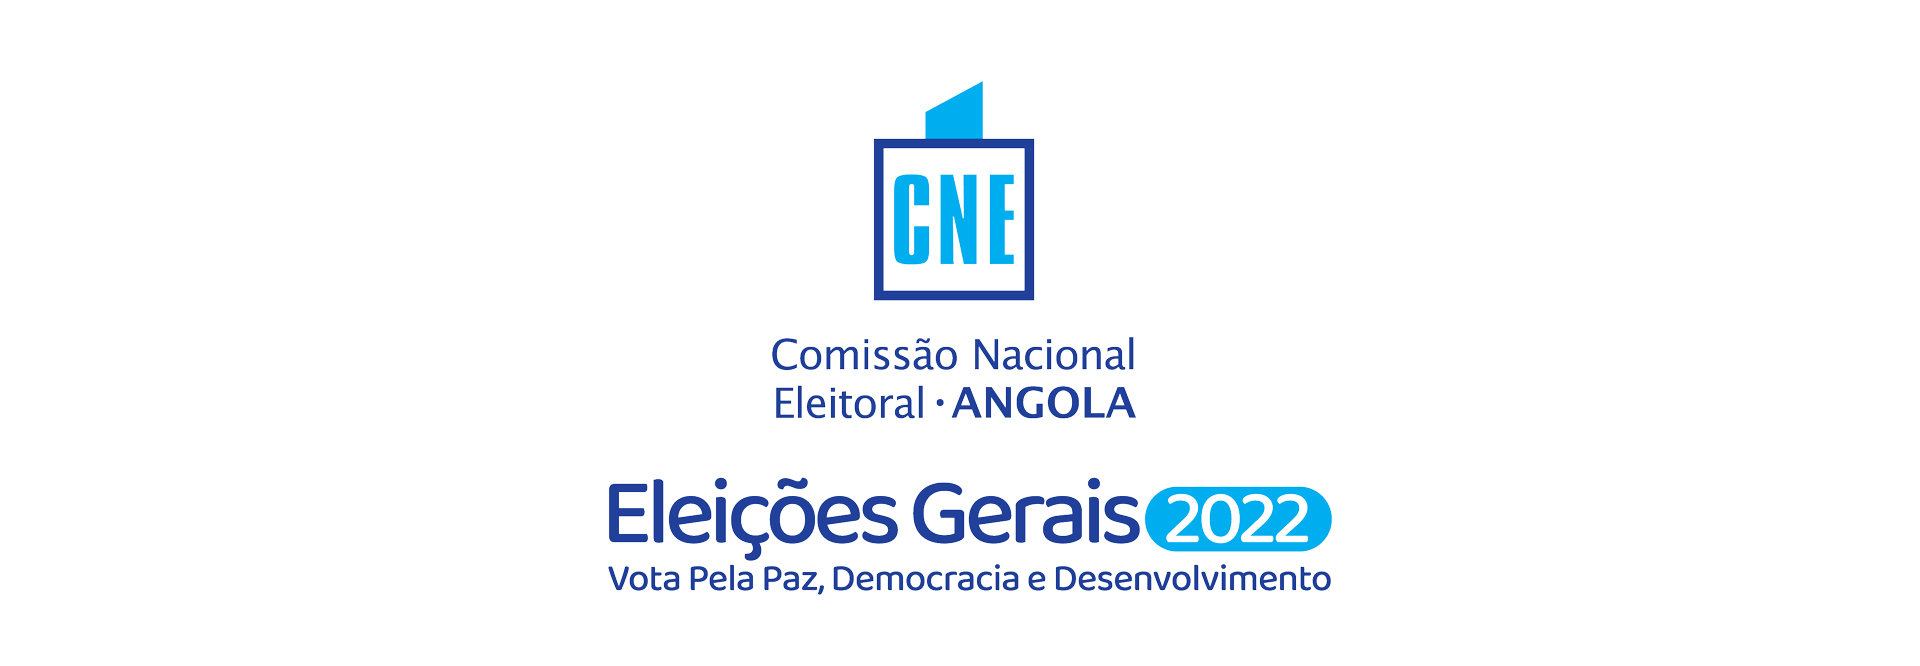 Membros da Região dos Grandes Lagos consideram as Eleições Gerais realizadas em Angola como justas 